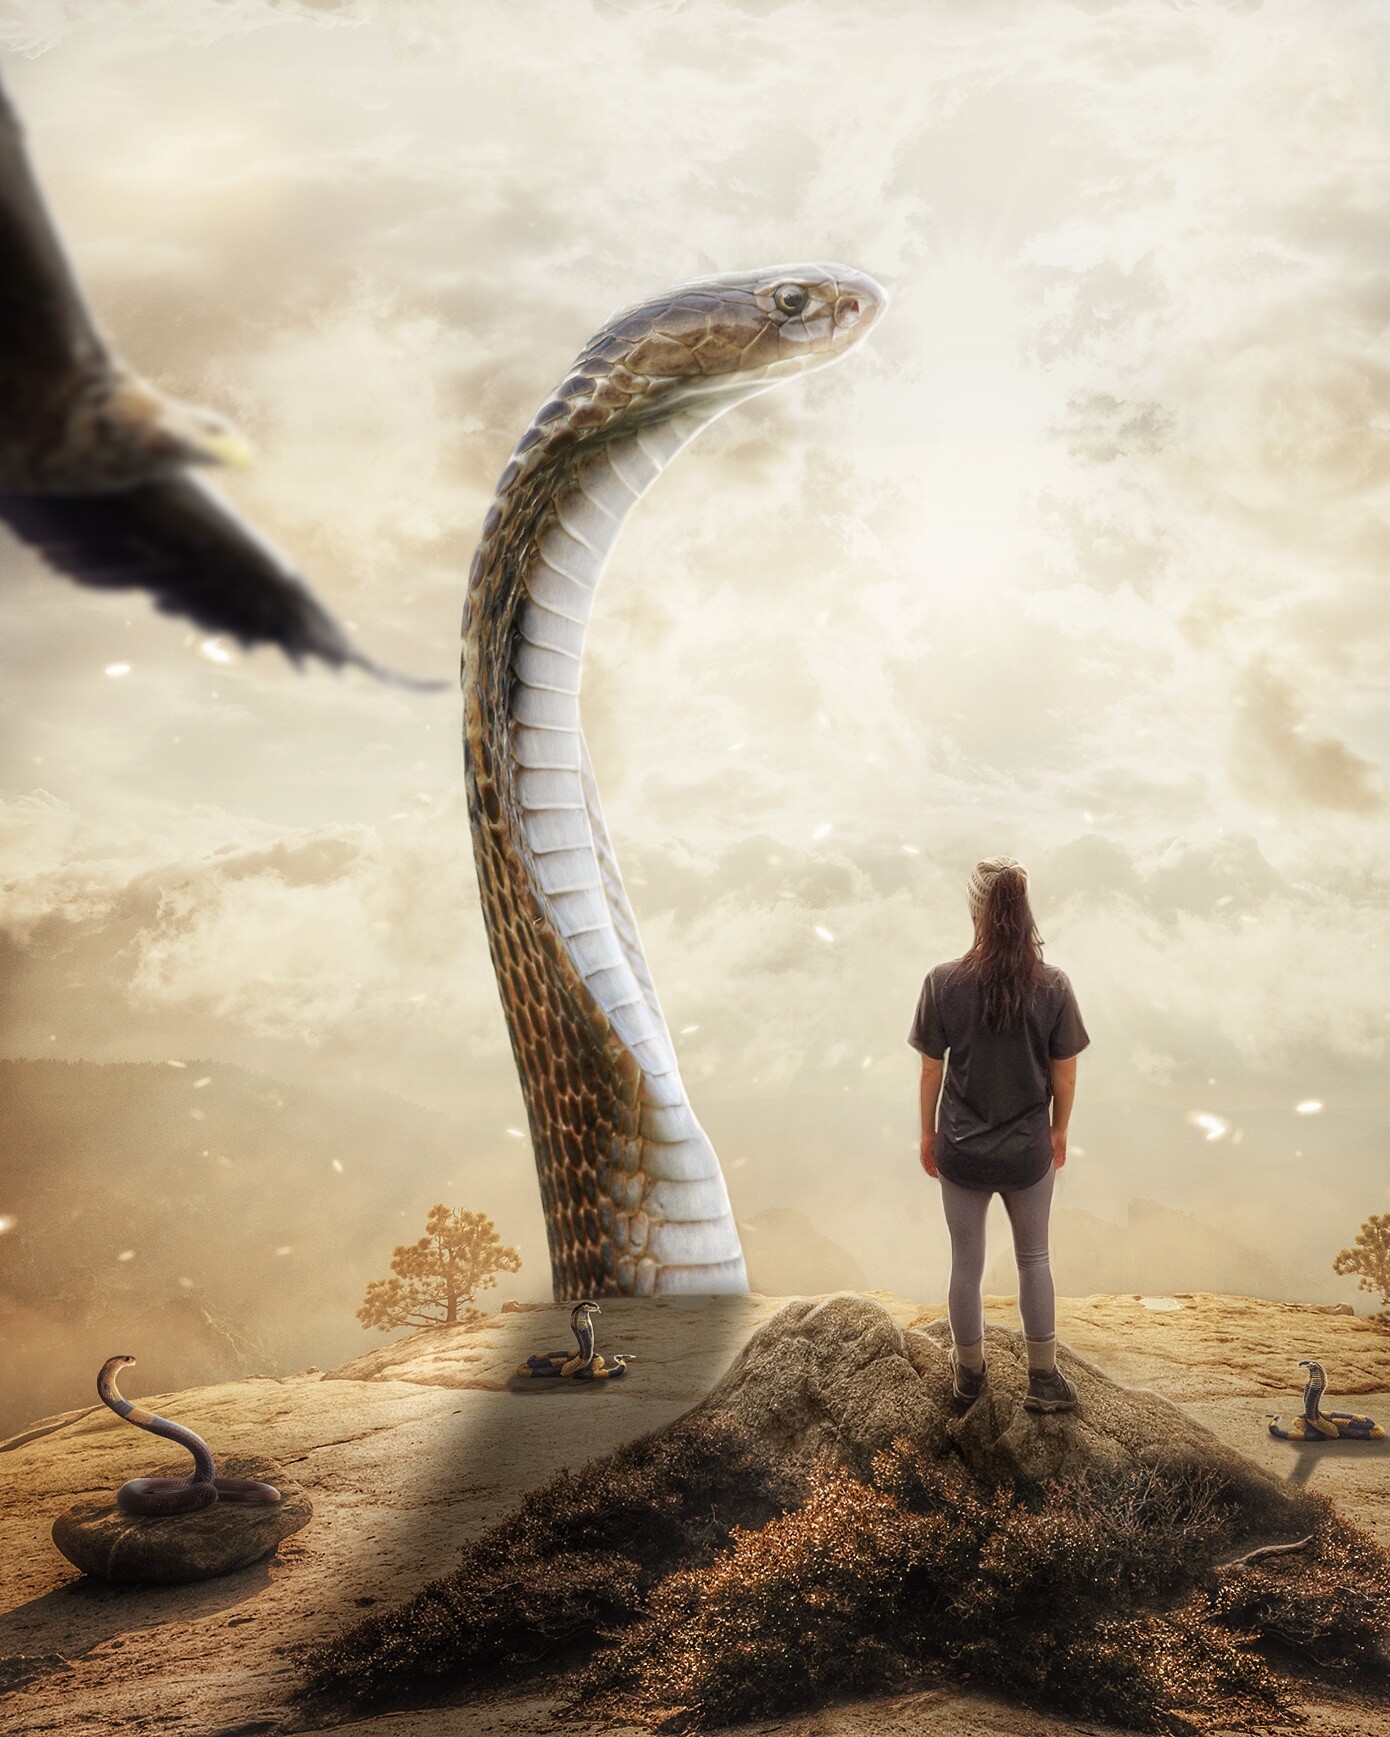 Длинной змеей раскинулся. Большую прям большую большую прям до неба змею настоящую. Длинный змеиный Единорог.